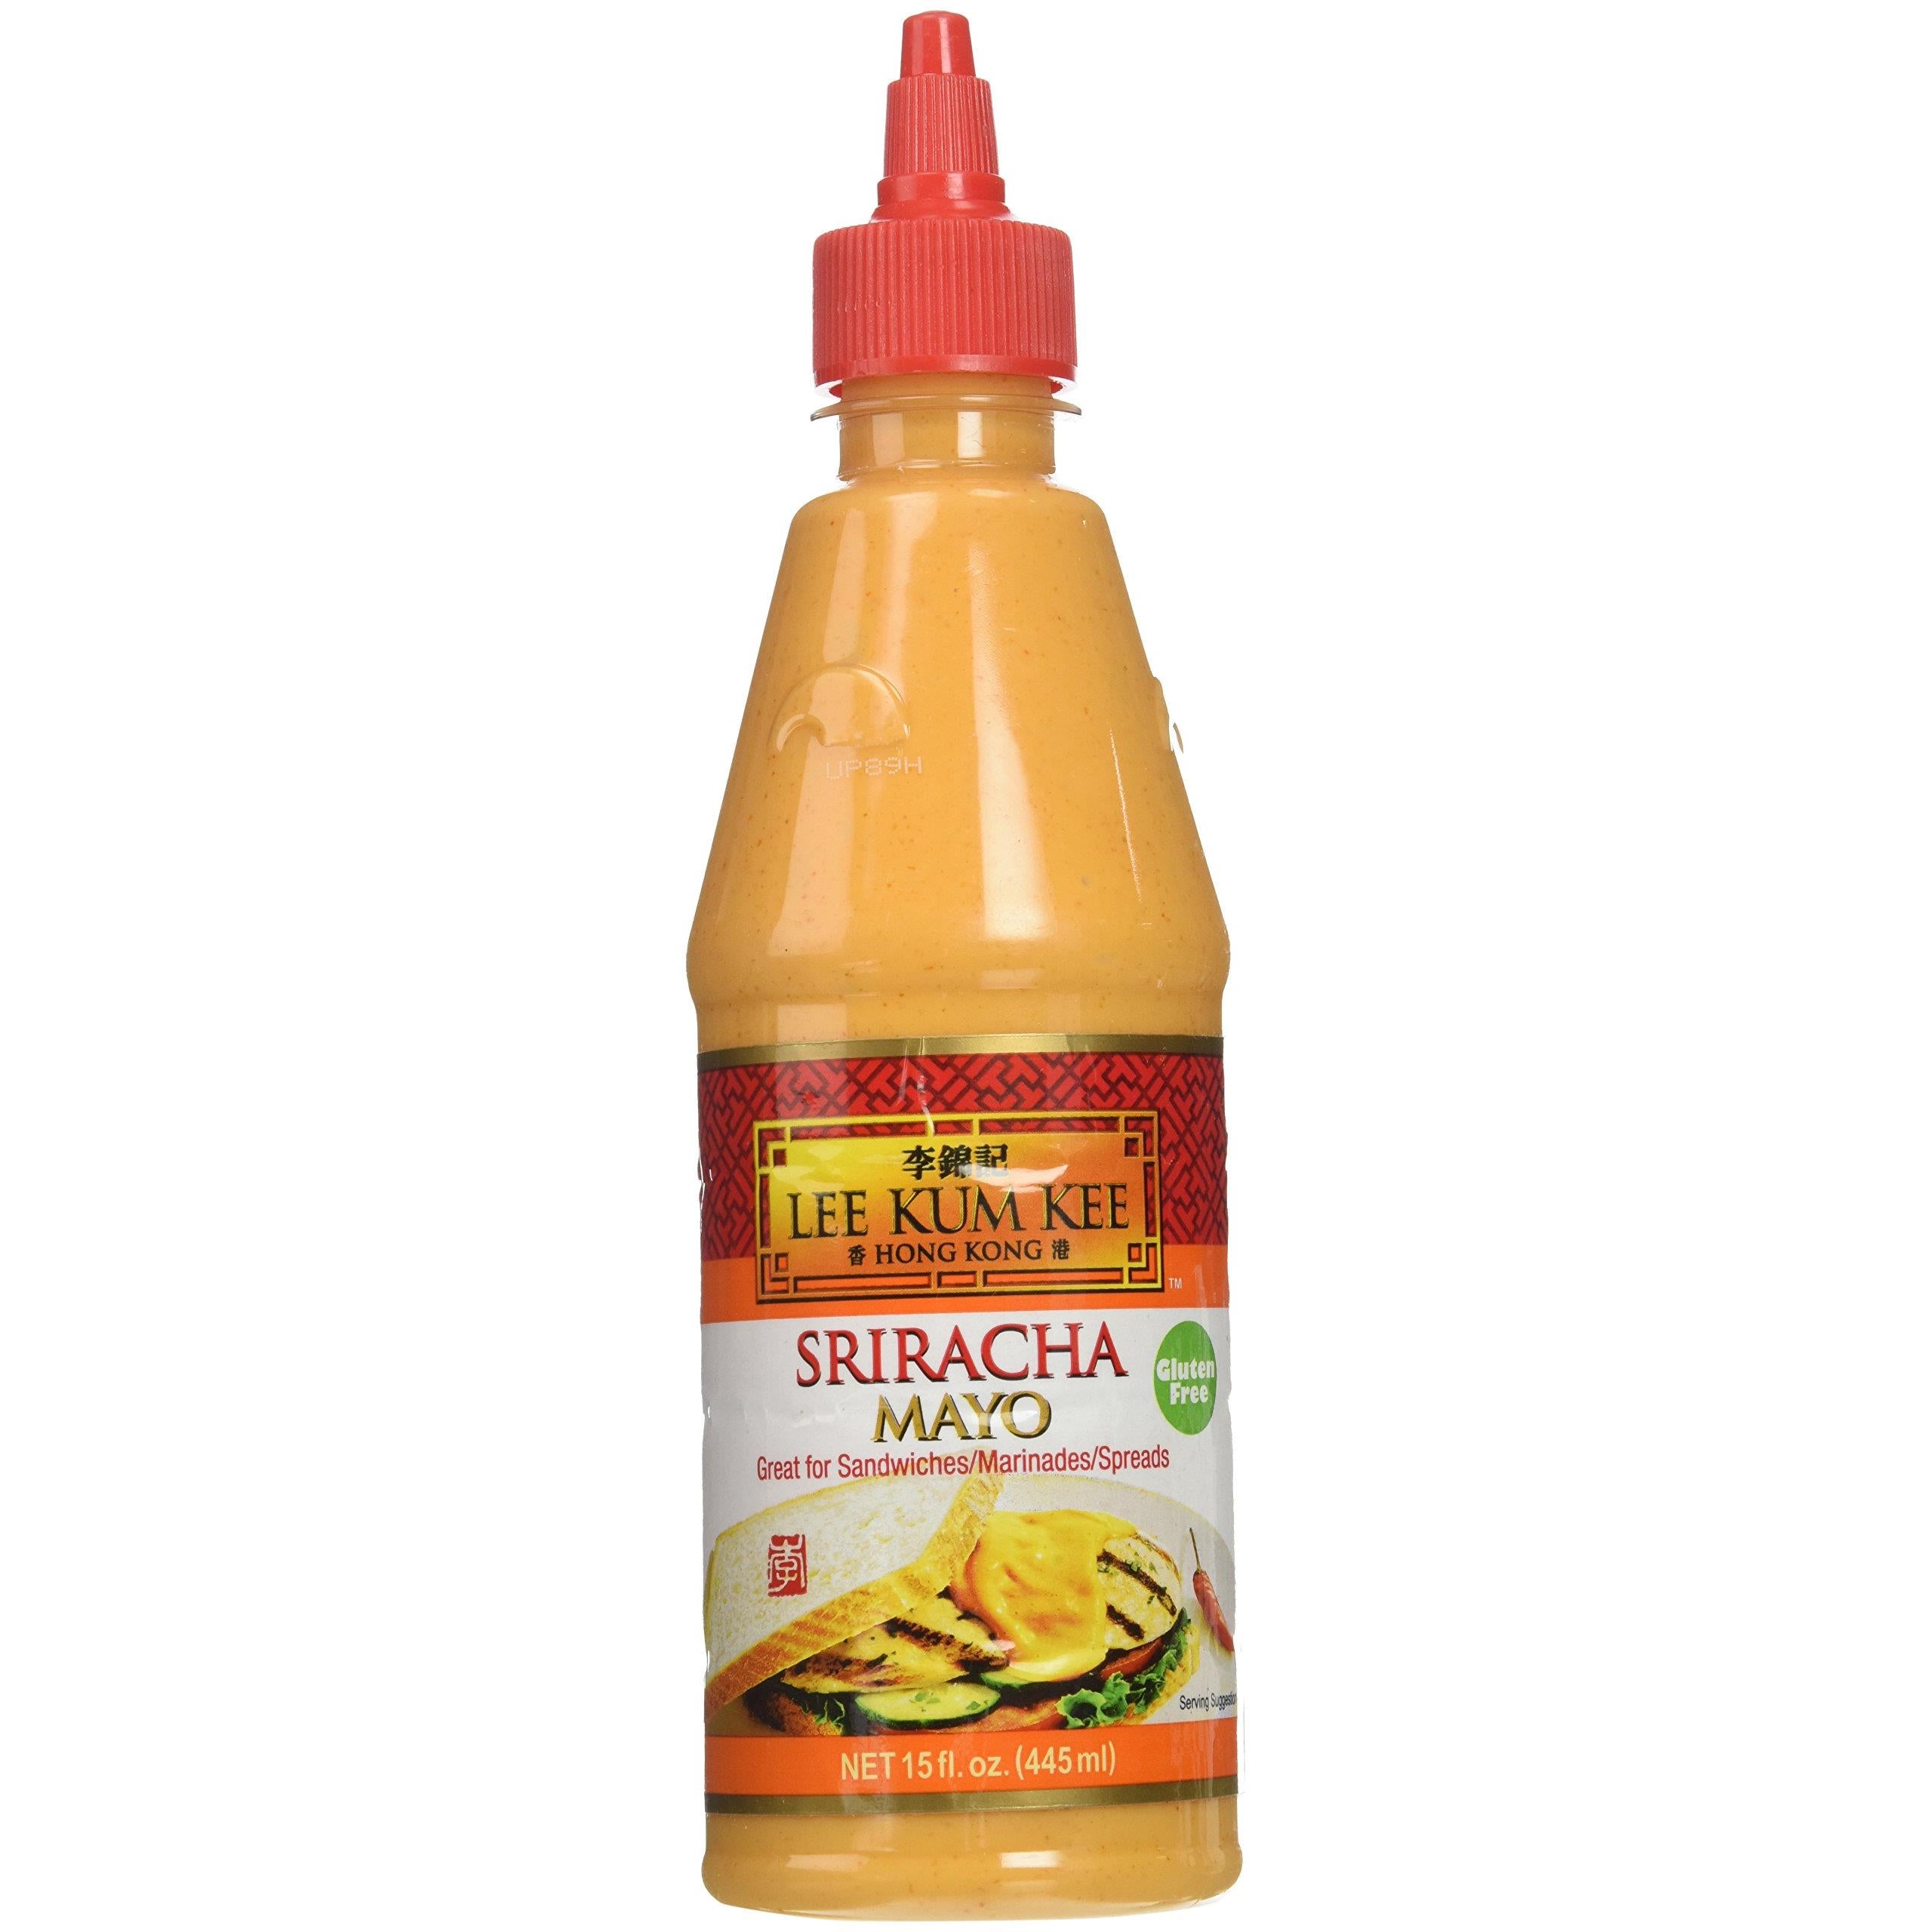 Lee Kum Kee Mayo Sriracha